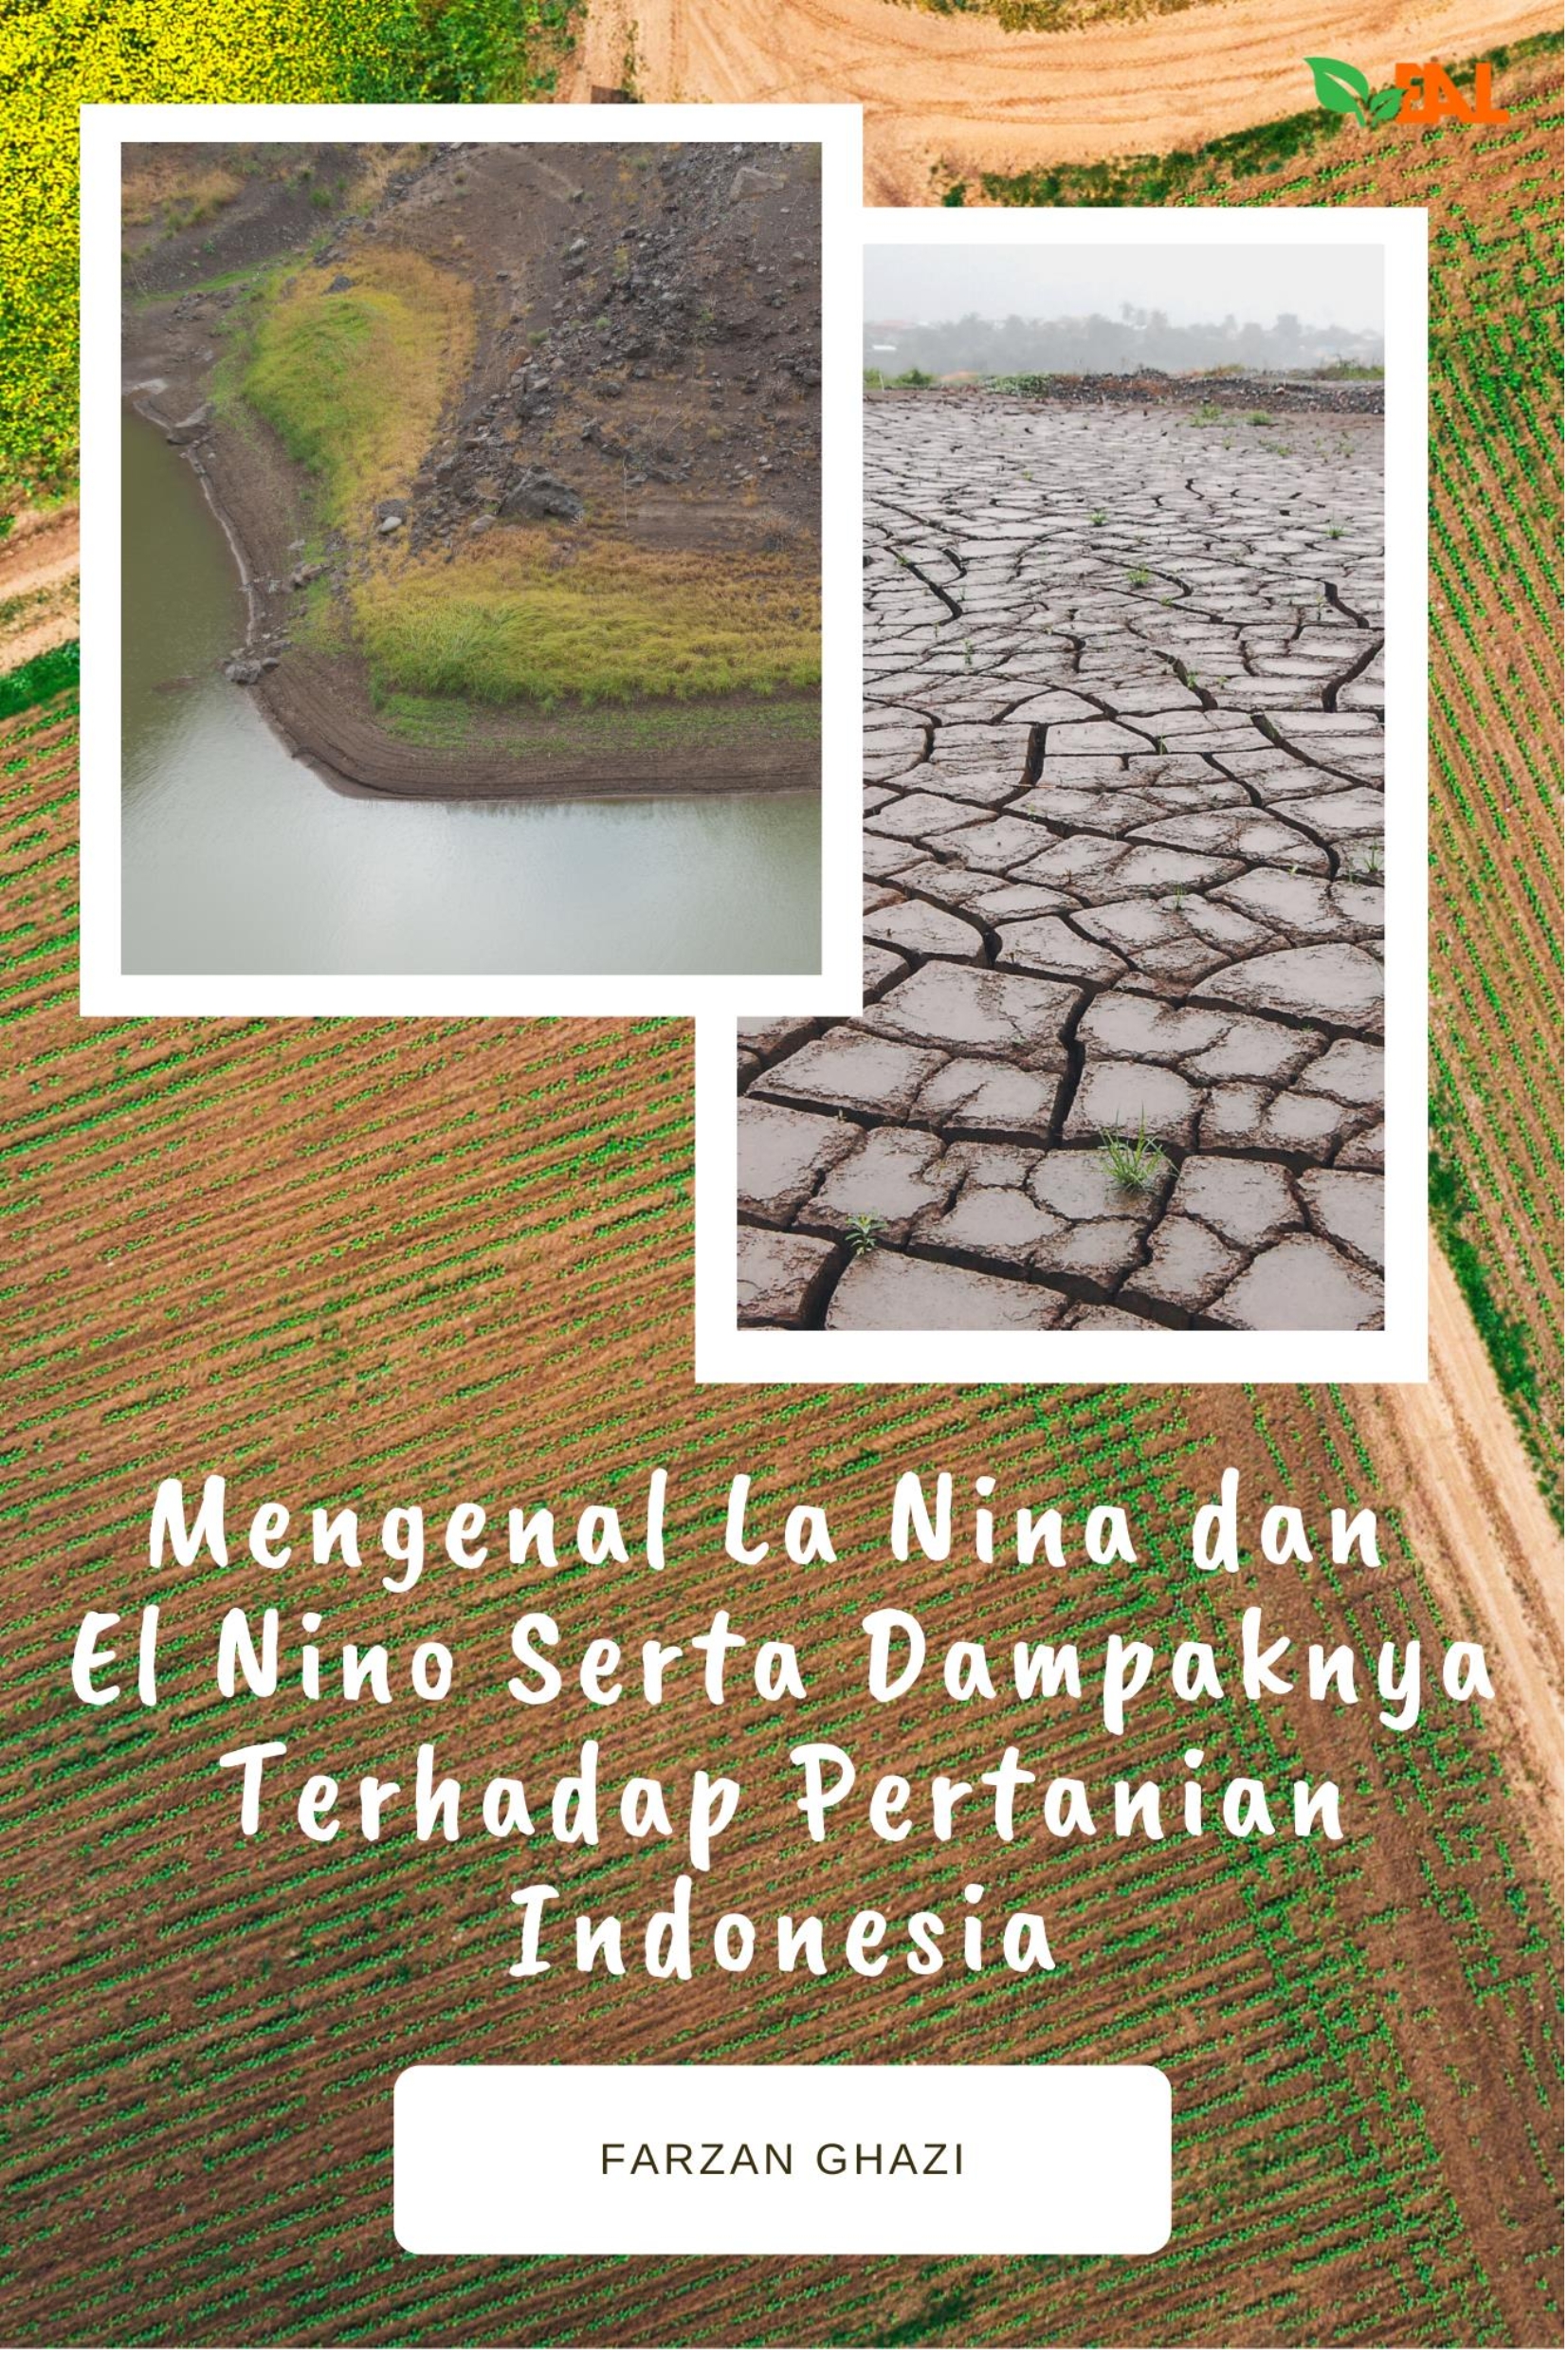 Mengenal La Nina dan El Nino serta dampaknya terhadap pertanian Indonesia [sumber elektronis]